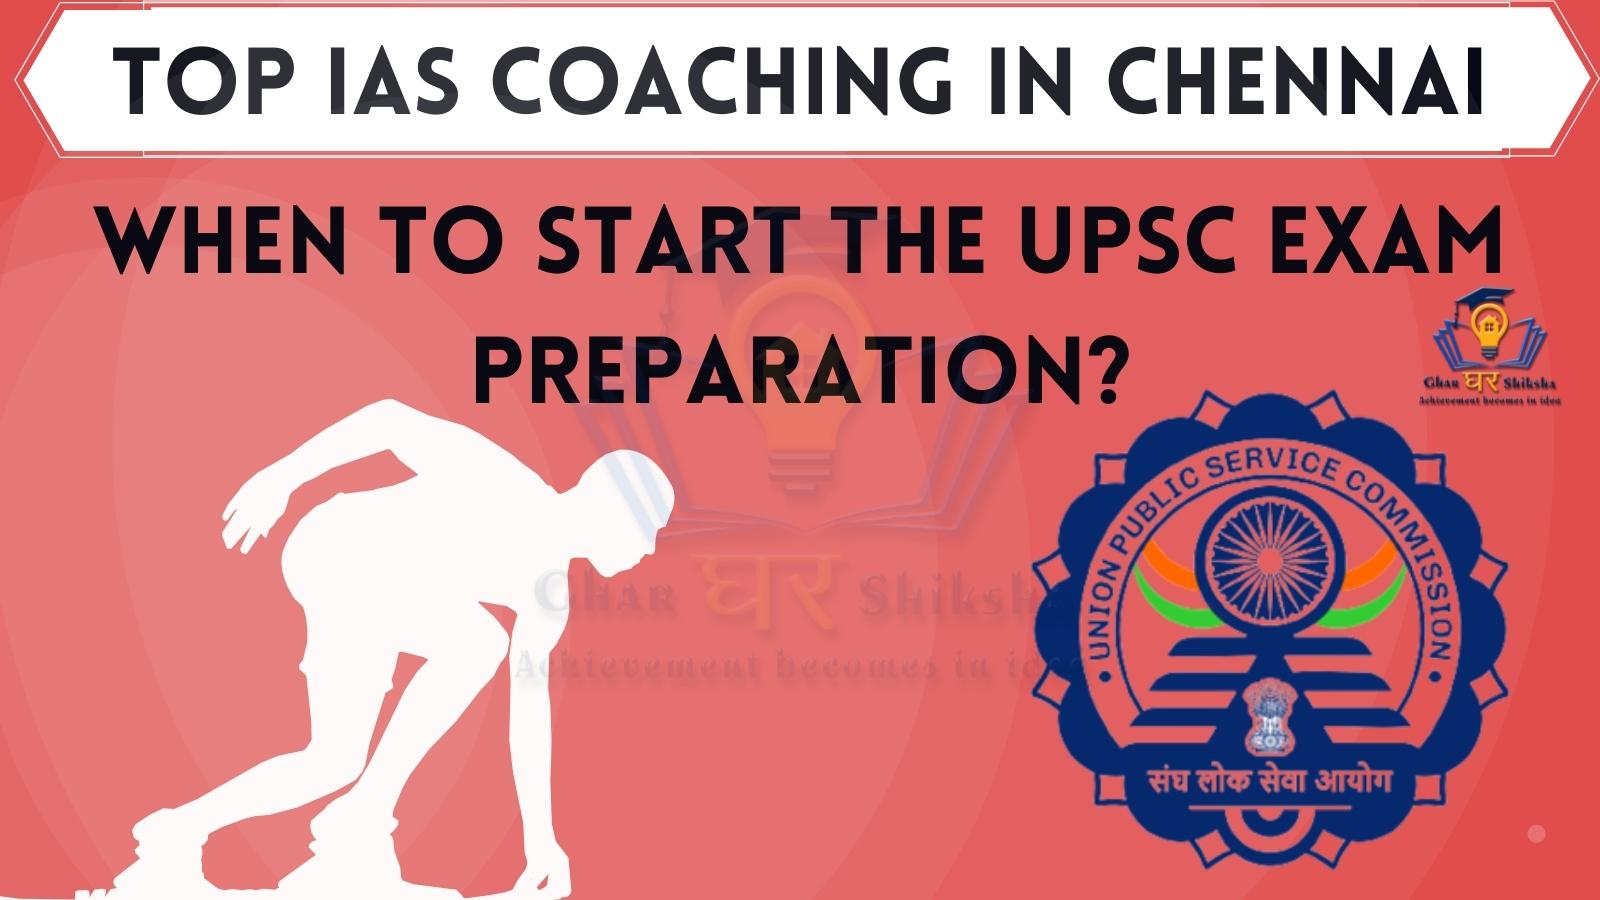 Best IAS Coaching Institutes In Chennai